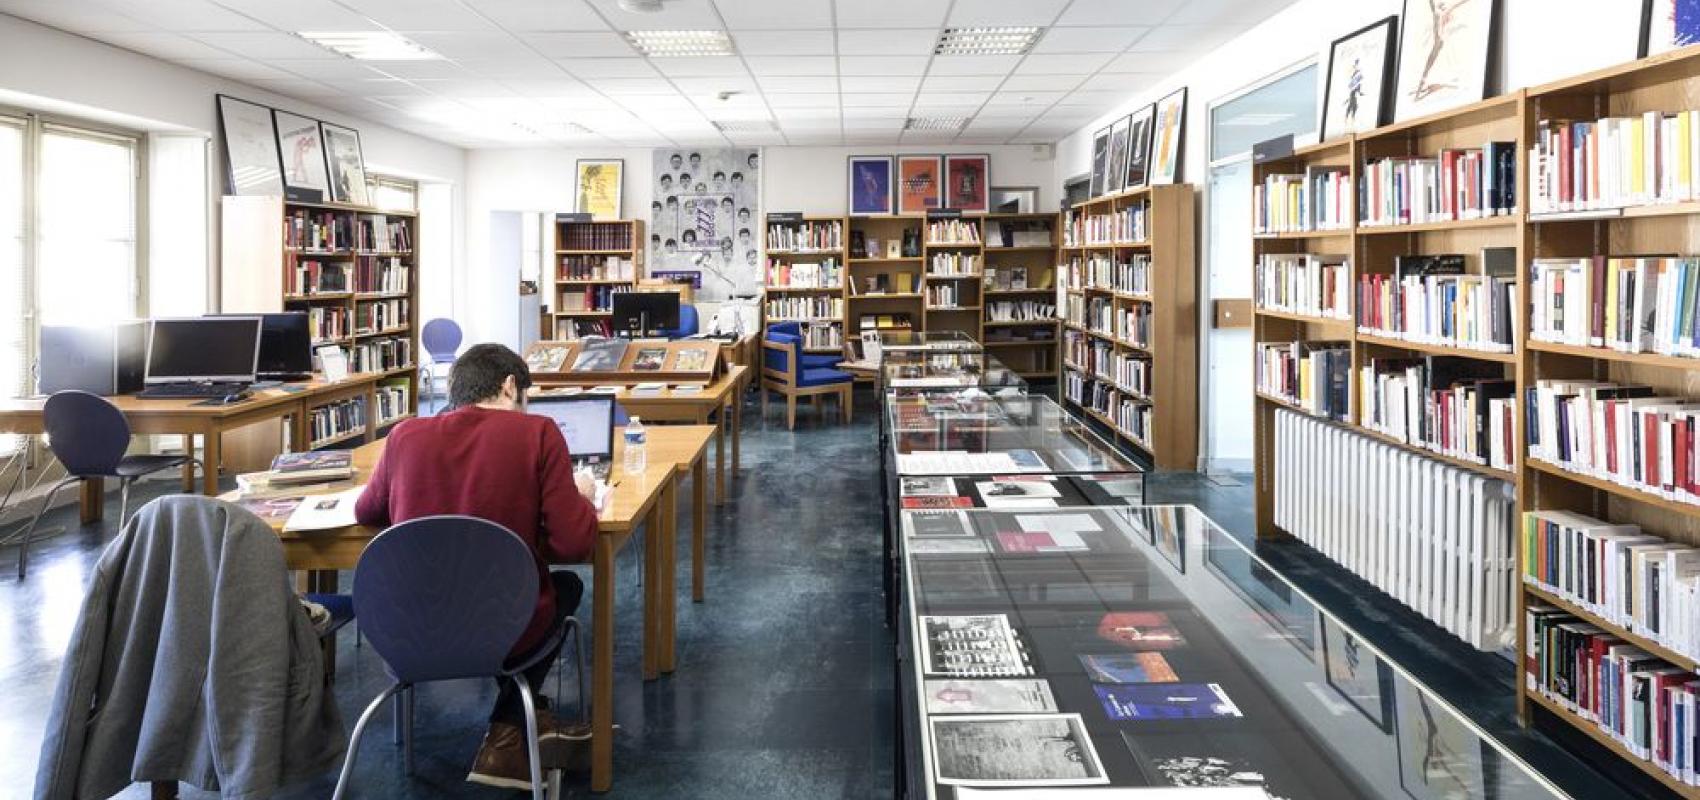 Salle de lecture de la bibliothèque de la Maison Jean-Vilar, Avignon -  - © Thierry Ardouin/Tendance Floue - BnF